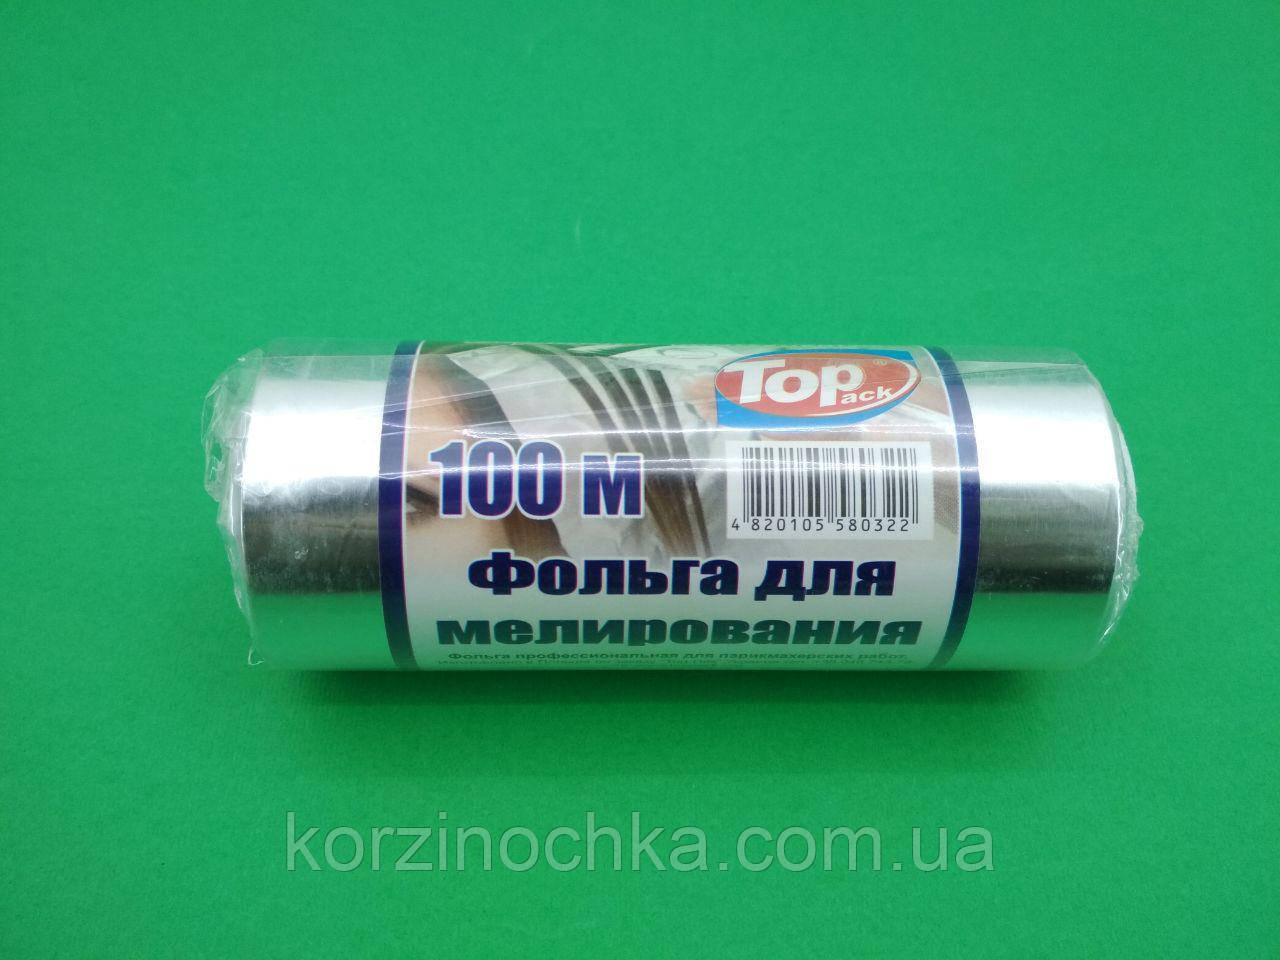 Алюмінієва фольга для мелірування 100м(1 рул)в Рулонах Упаковка